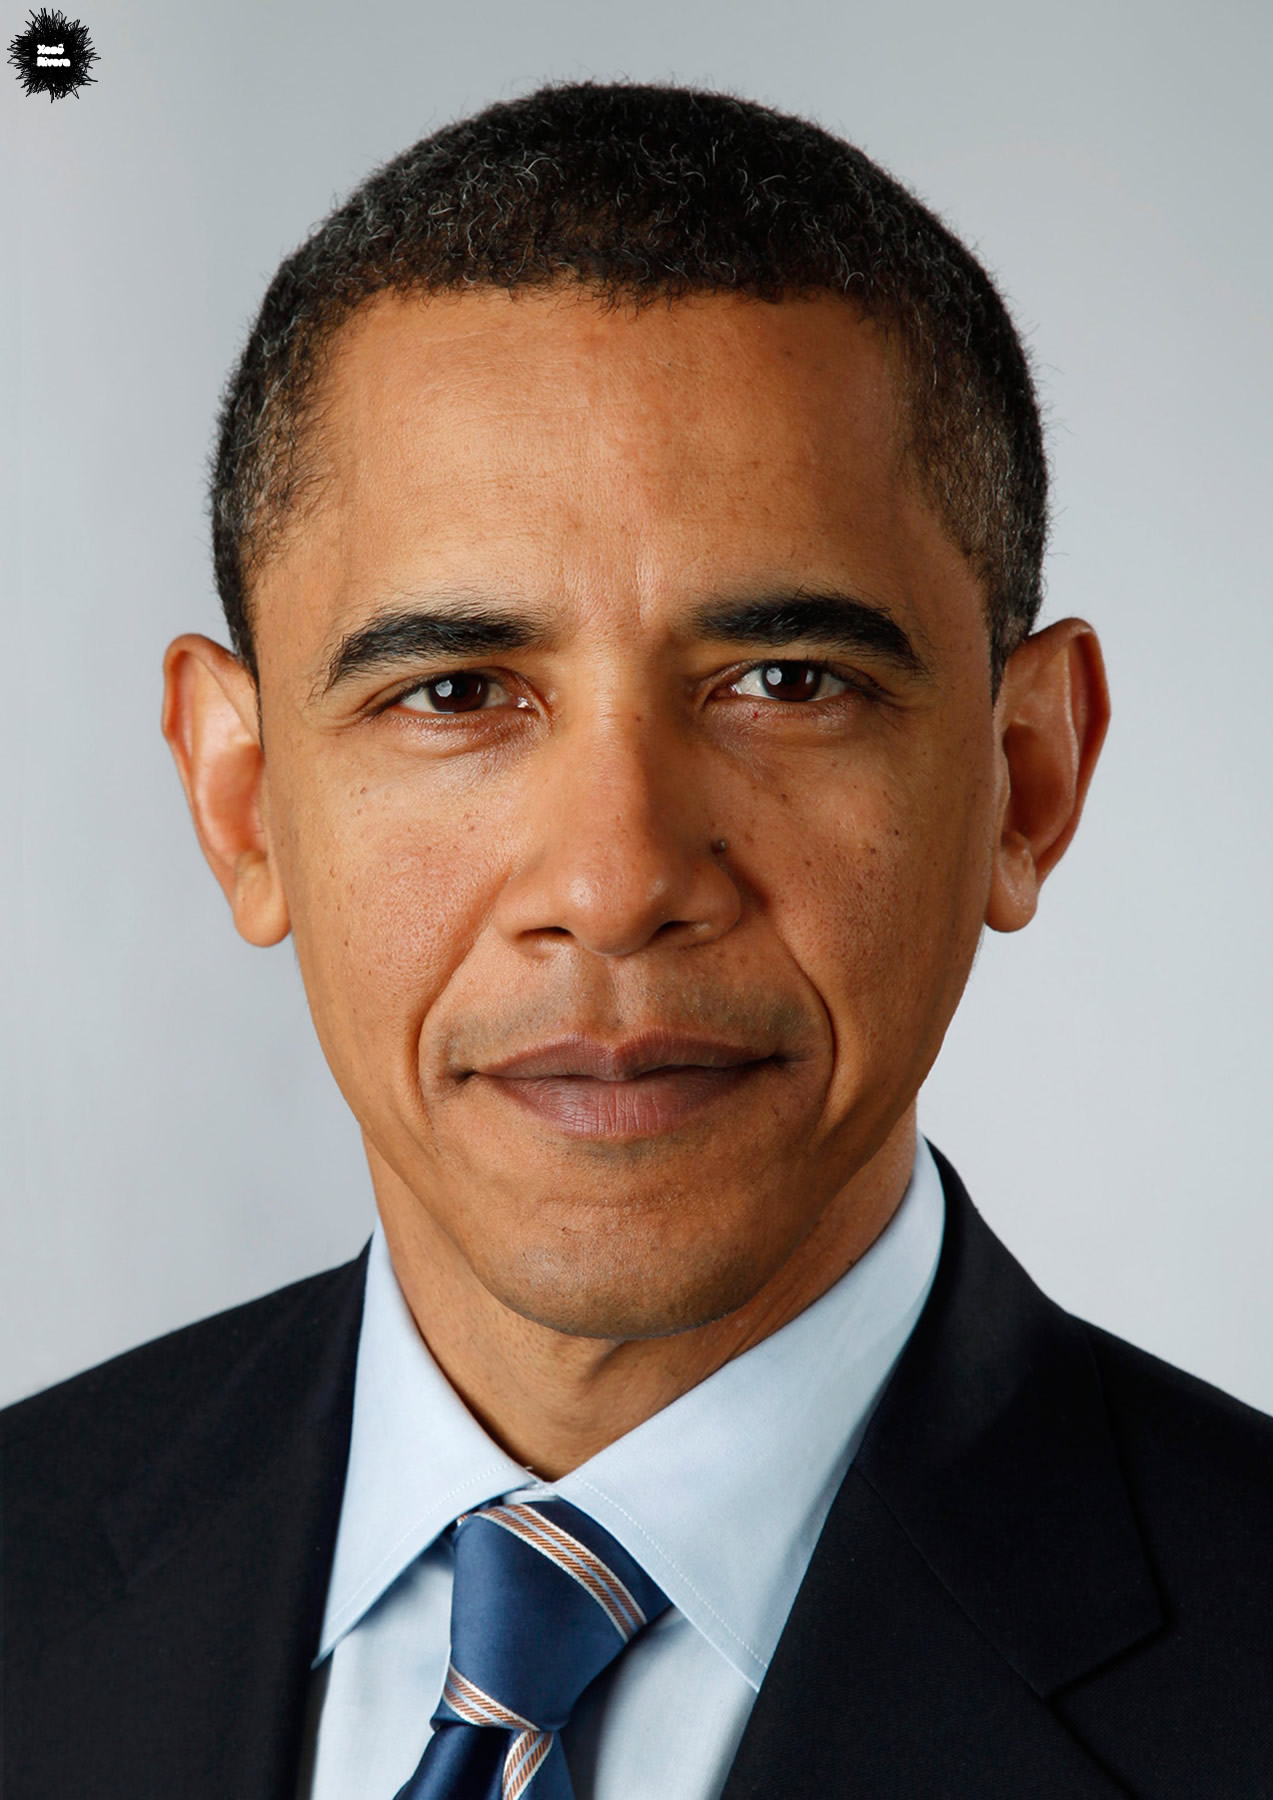 Barack Obama Negro